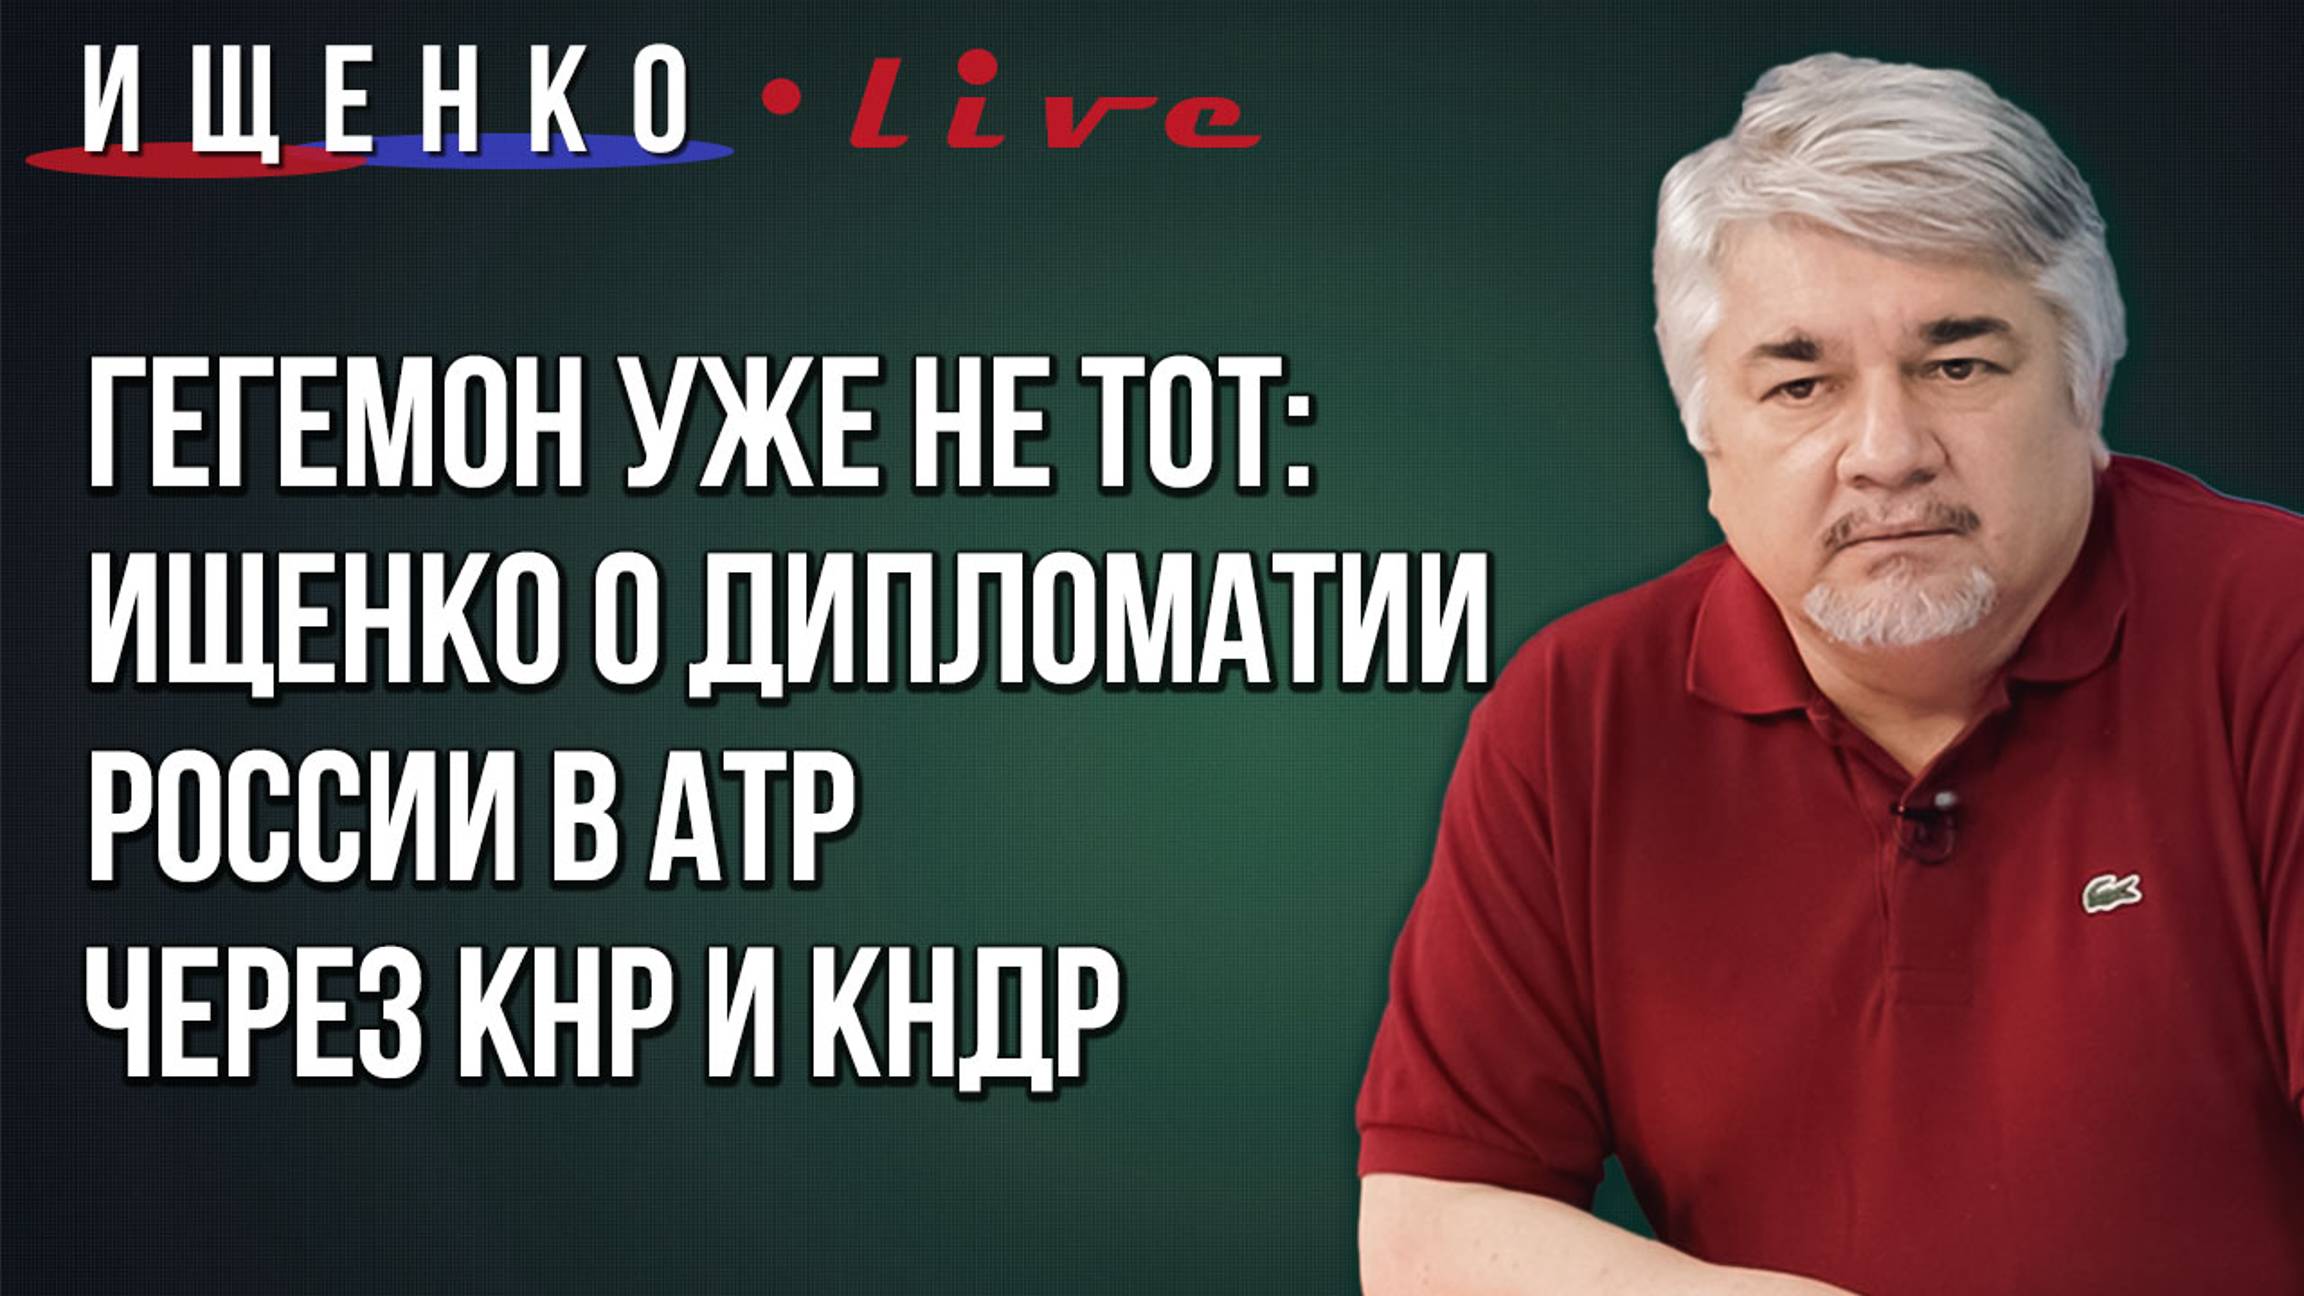 Ищенко о статистике потерь ВСУ на фронте, переезде украинцев в РФ и религиозной раскачке